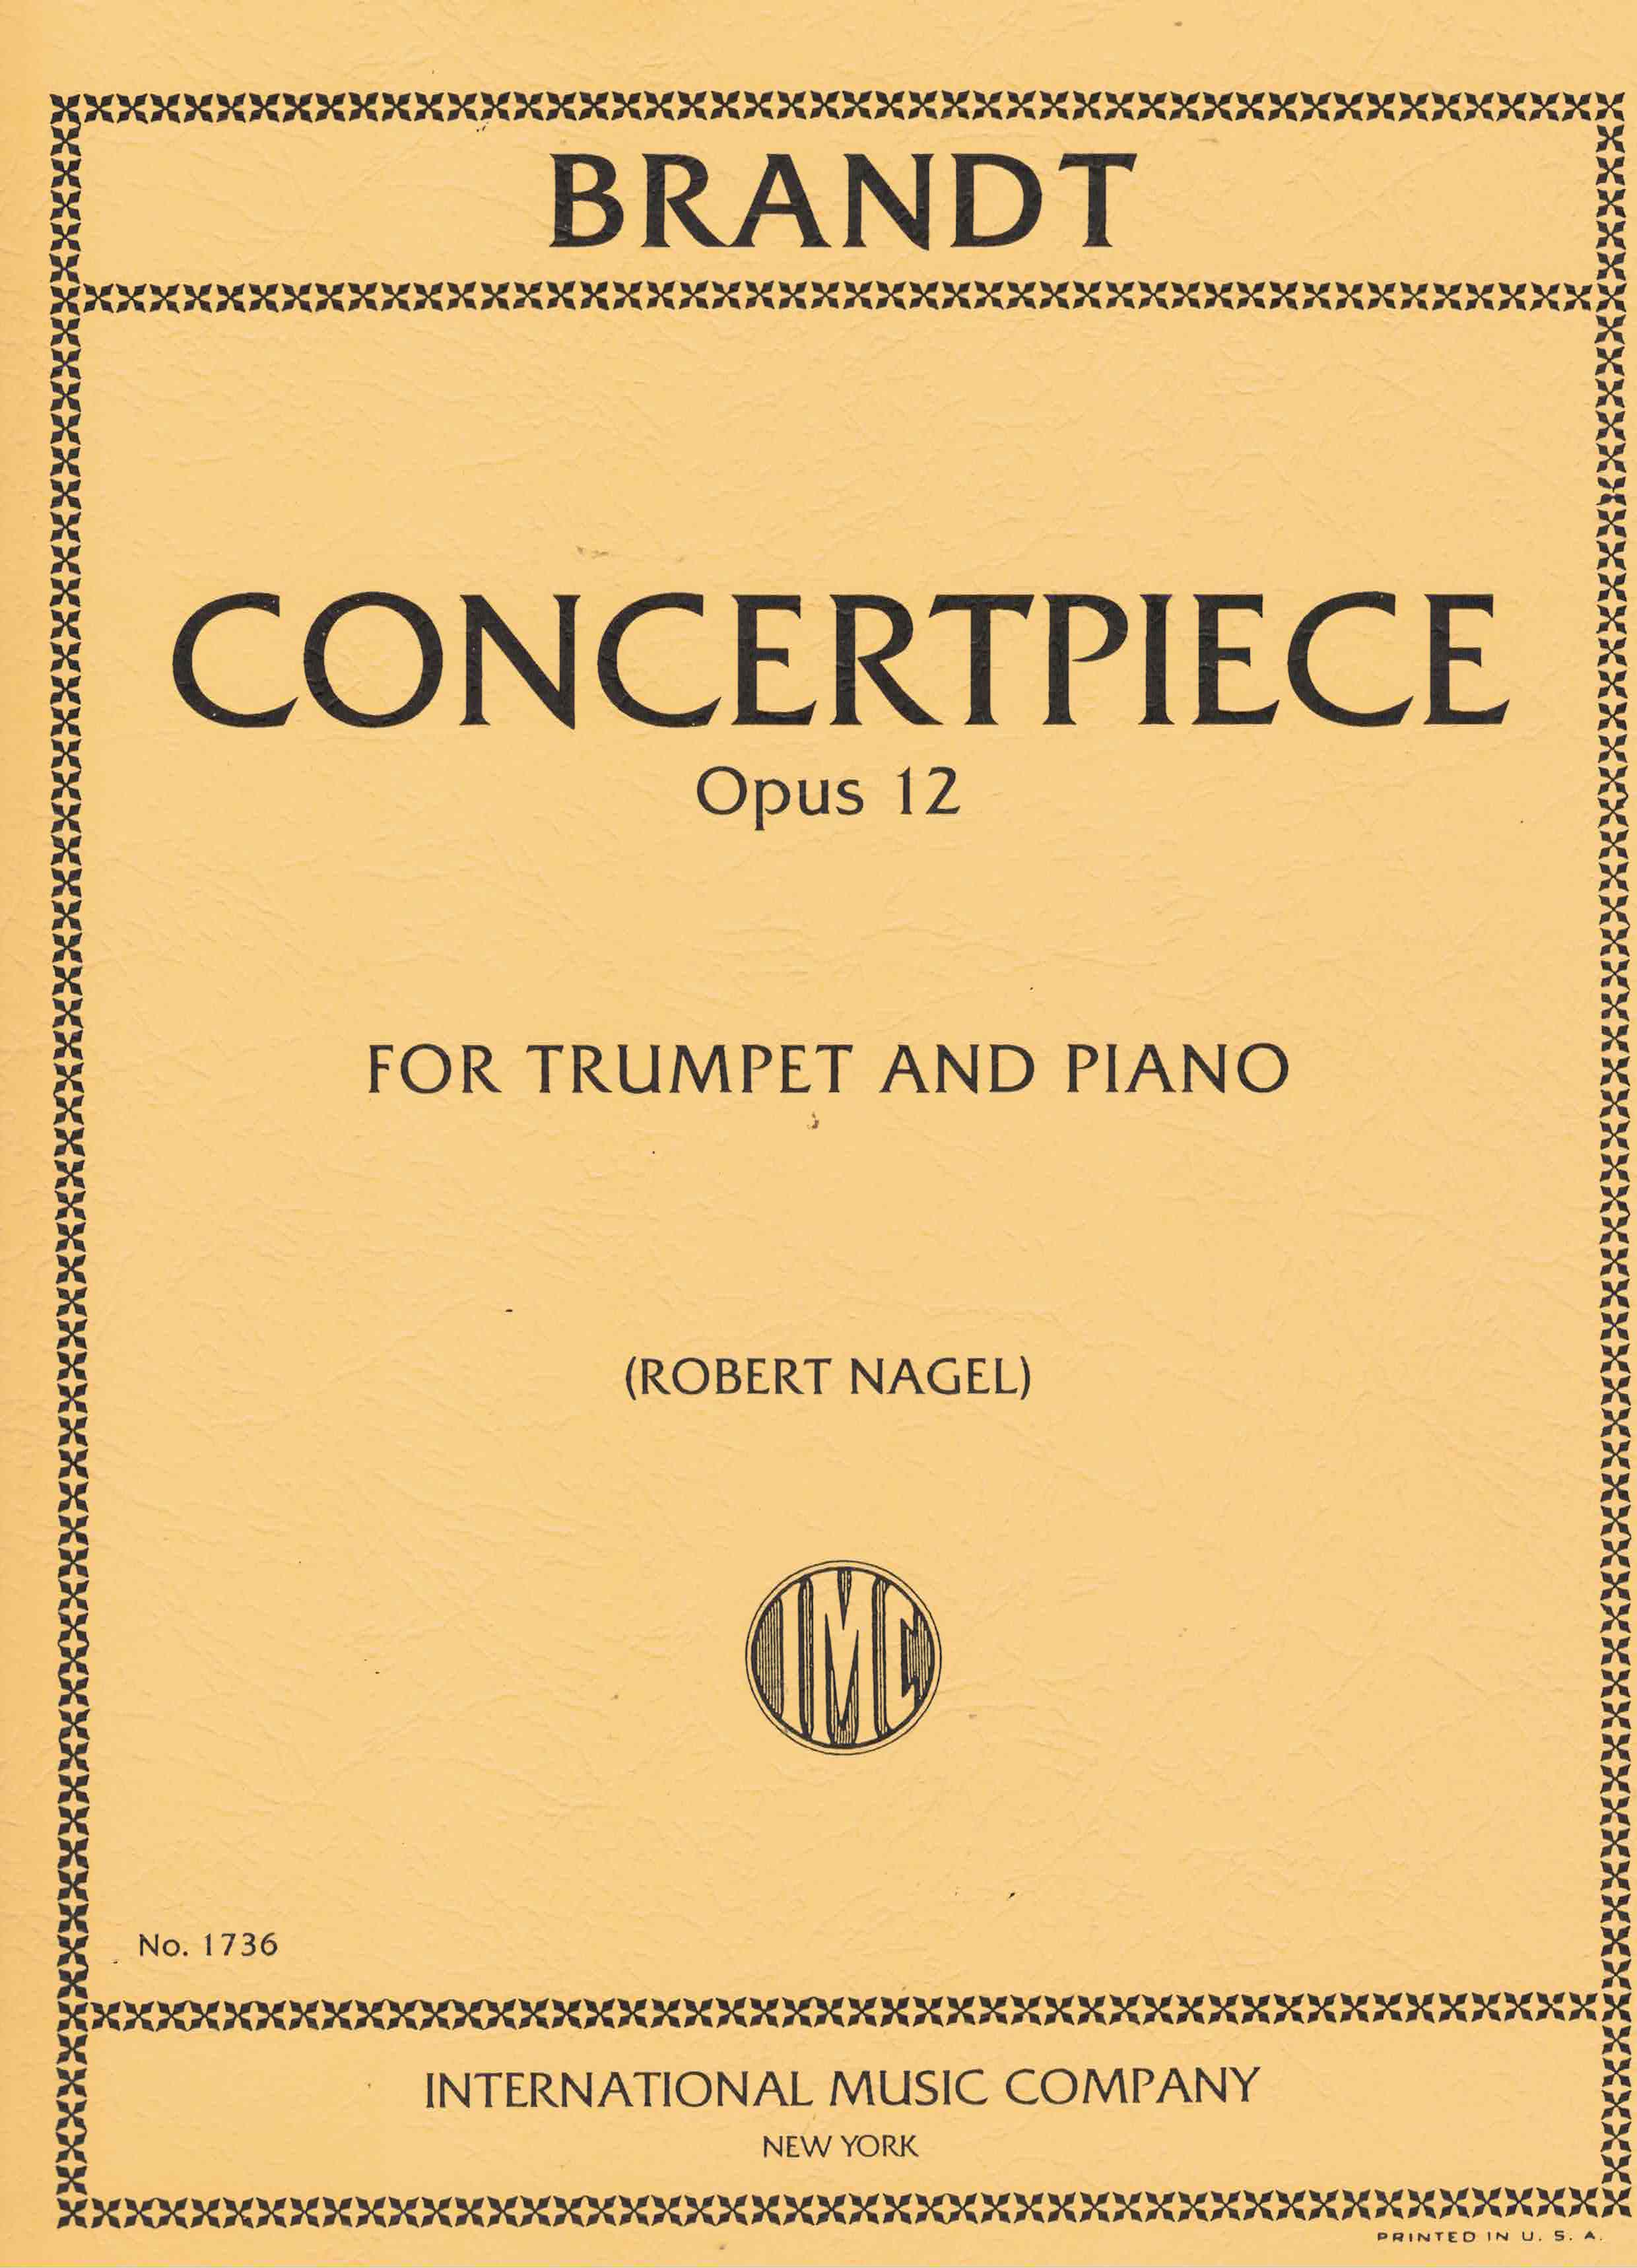 Concert Piece op.12, Brandt, Trp Klav